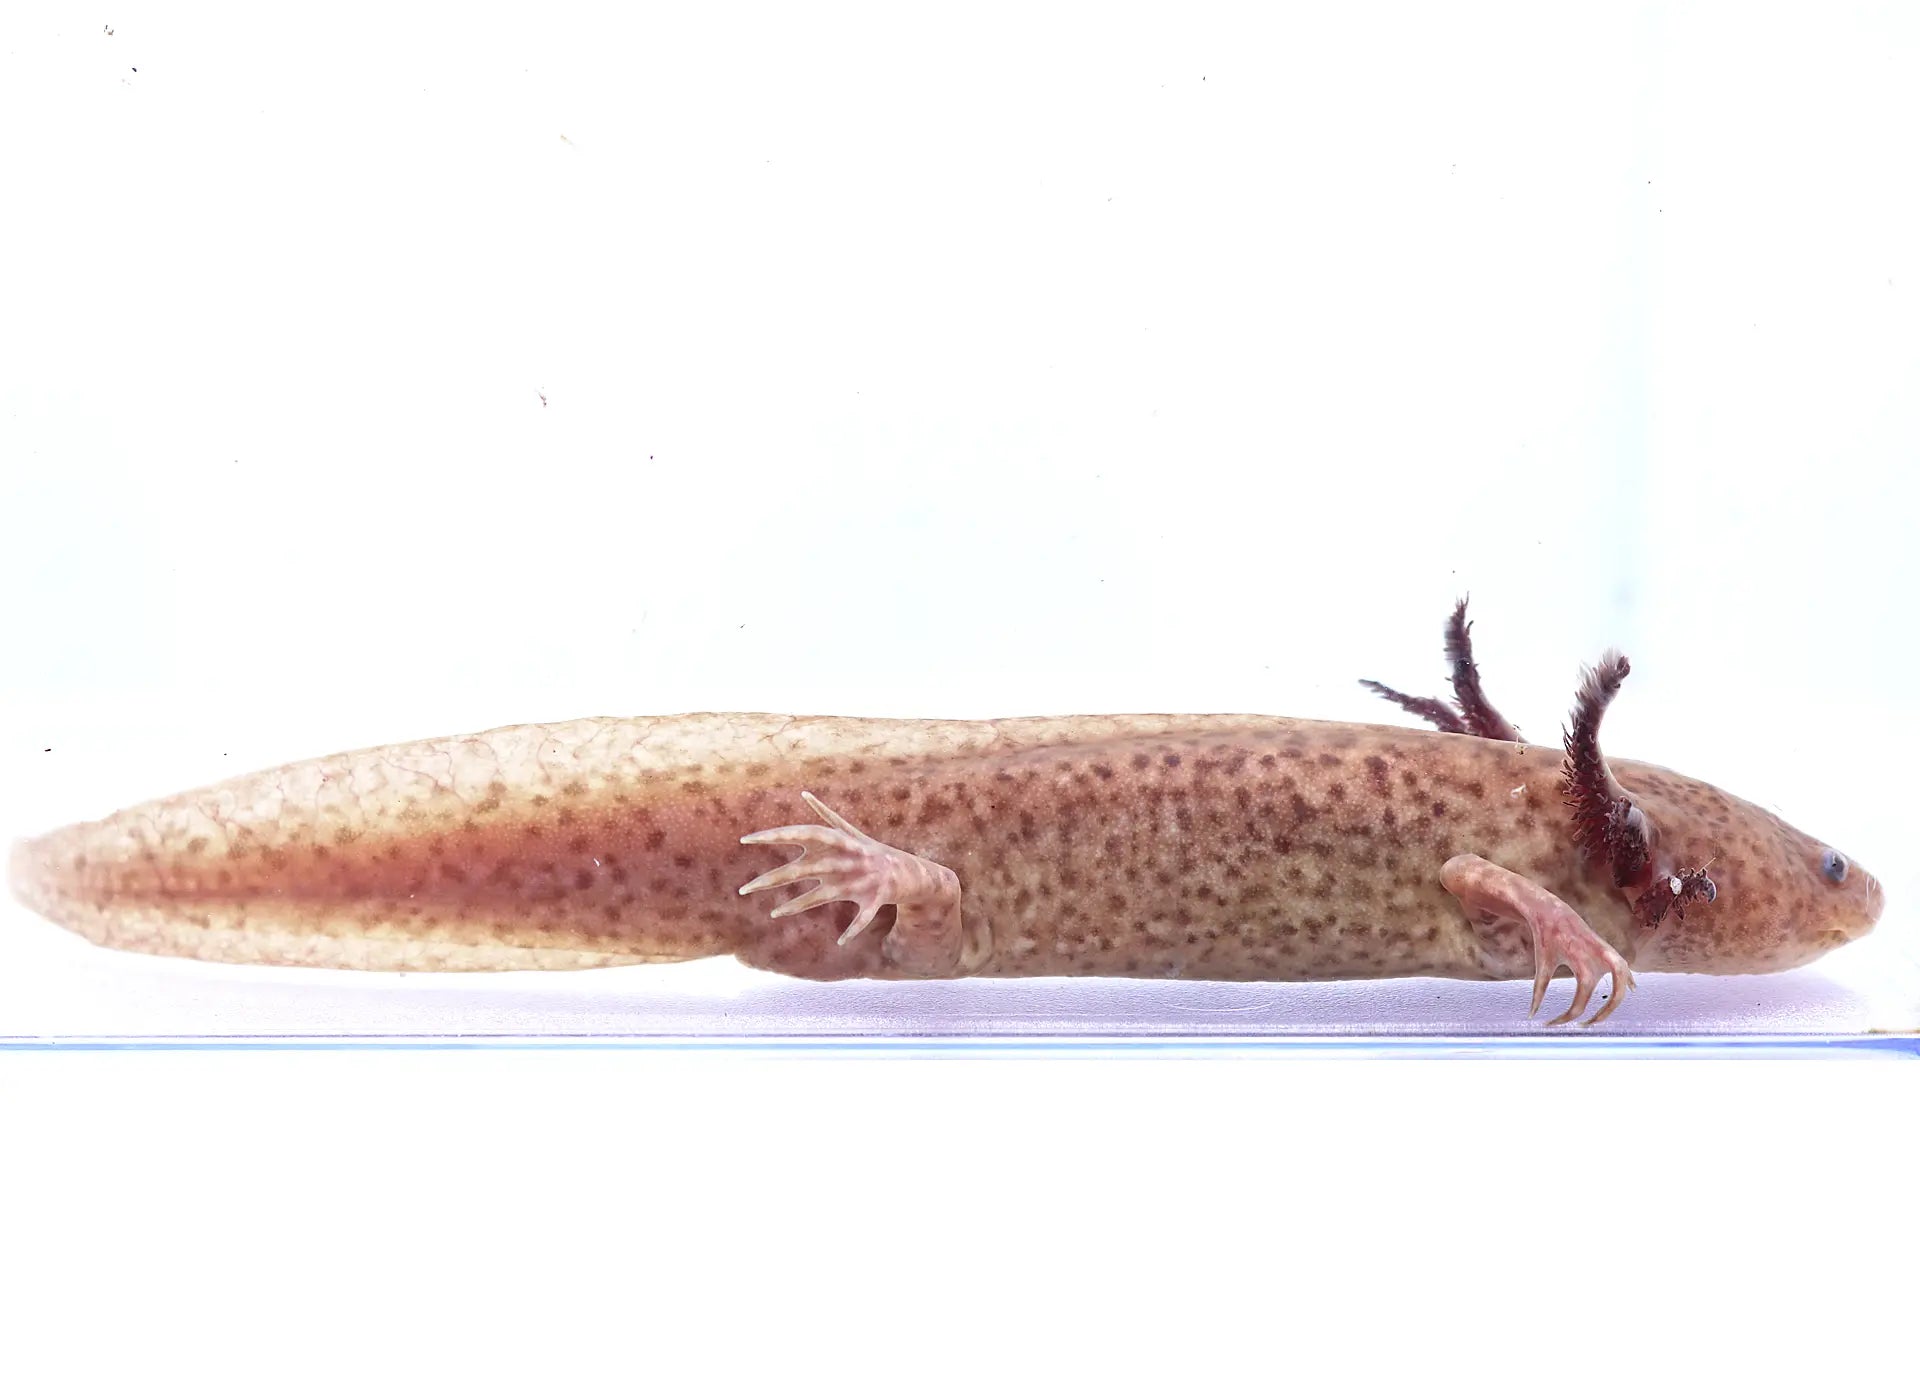 Axanthic Copper Axolotl